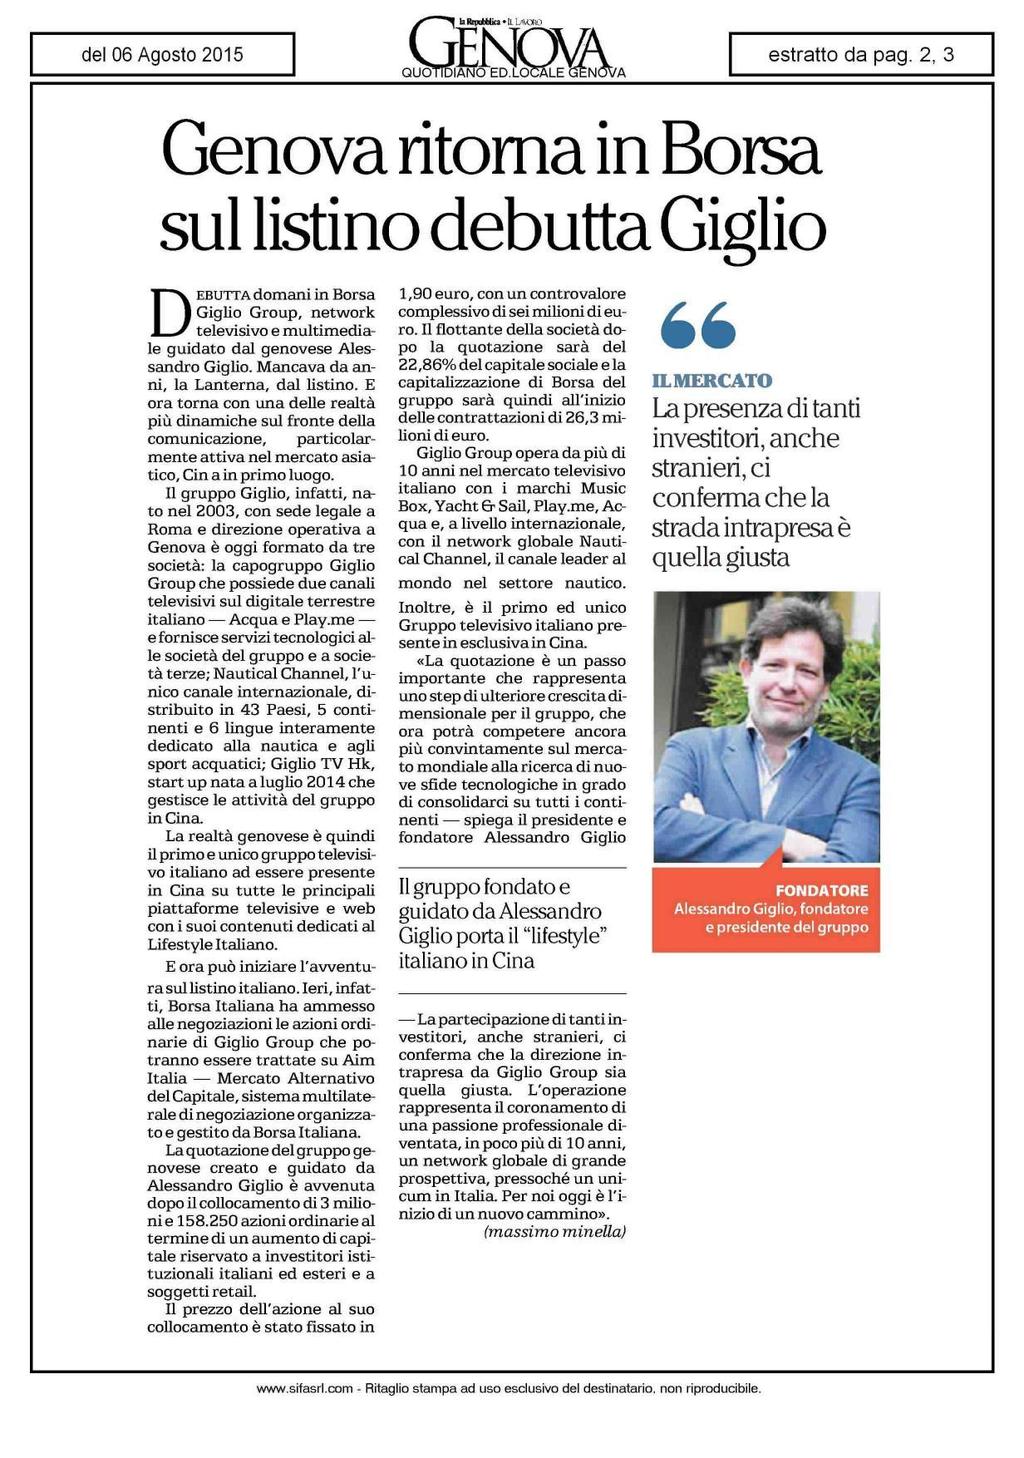 Genovaritornain Borsa sul listino debutta Giglio DEBUTTA domani in Borsa Giglio Group, network televisivo e multimediale guidato dal genovese Alessandro Giglio.